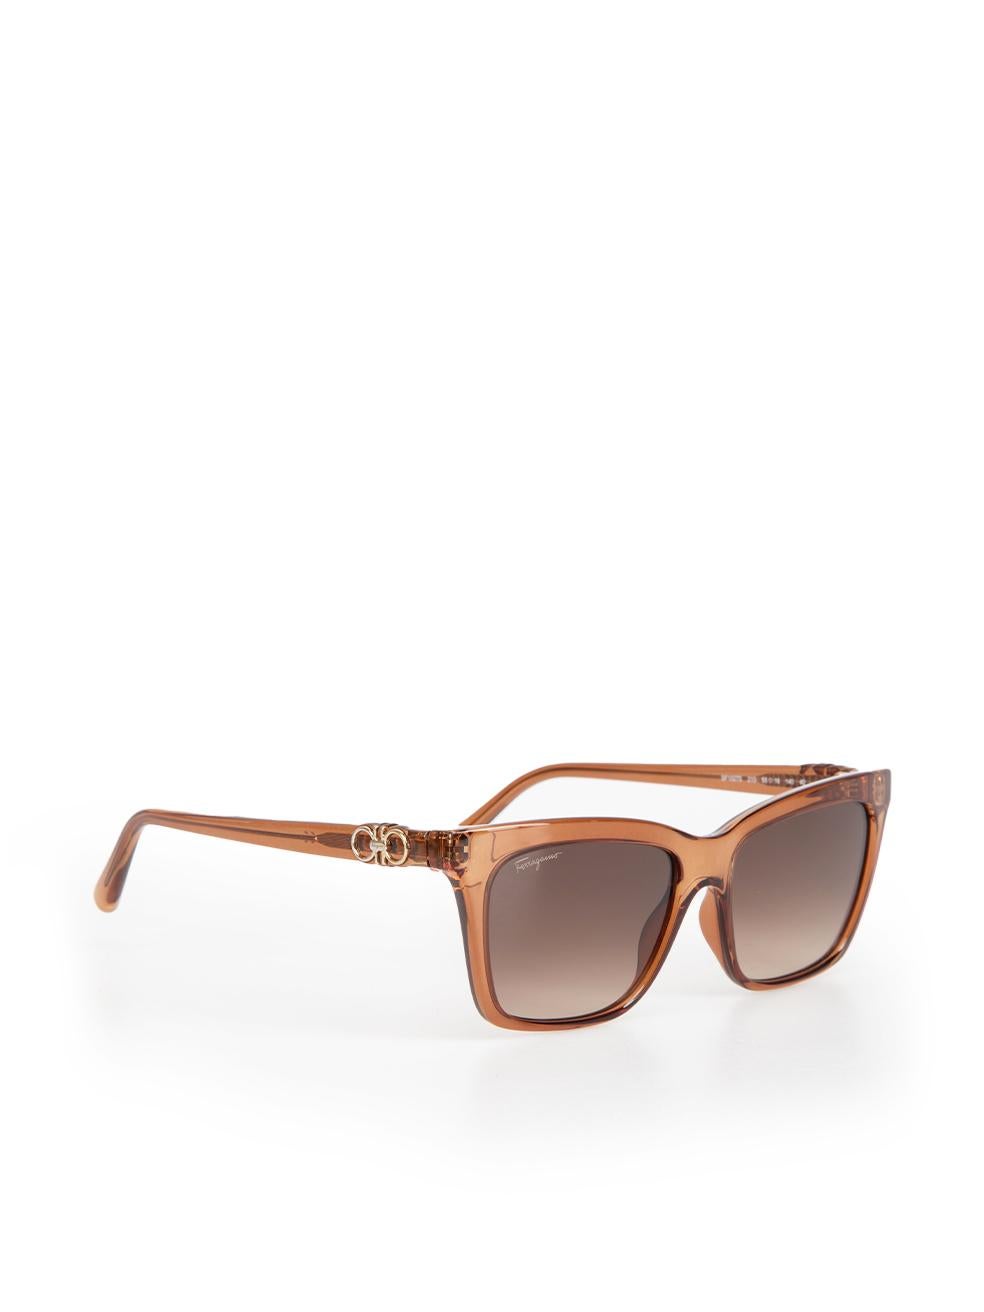 Salvatore Ferragamo Brown Gradient Rectangle Sunglasses In New Condition For Sale In London, GB